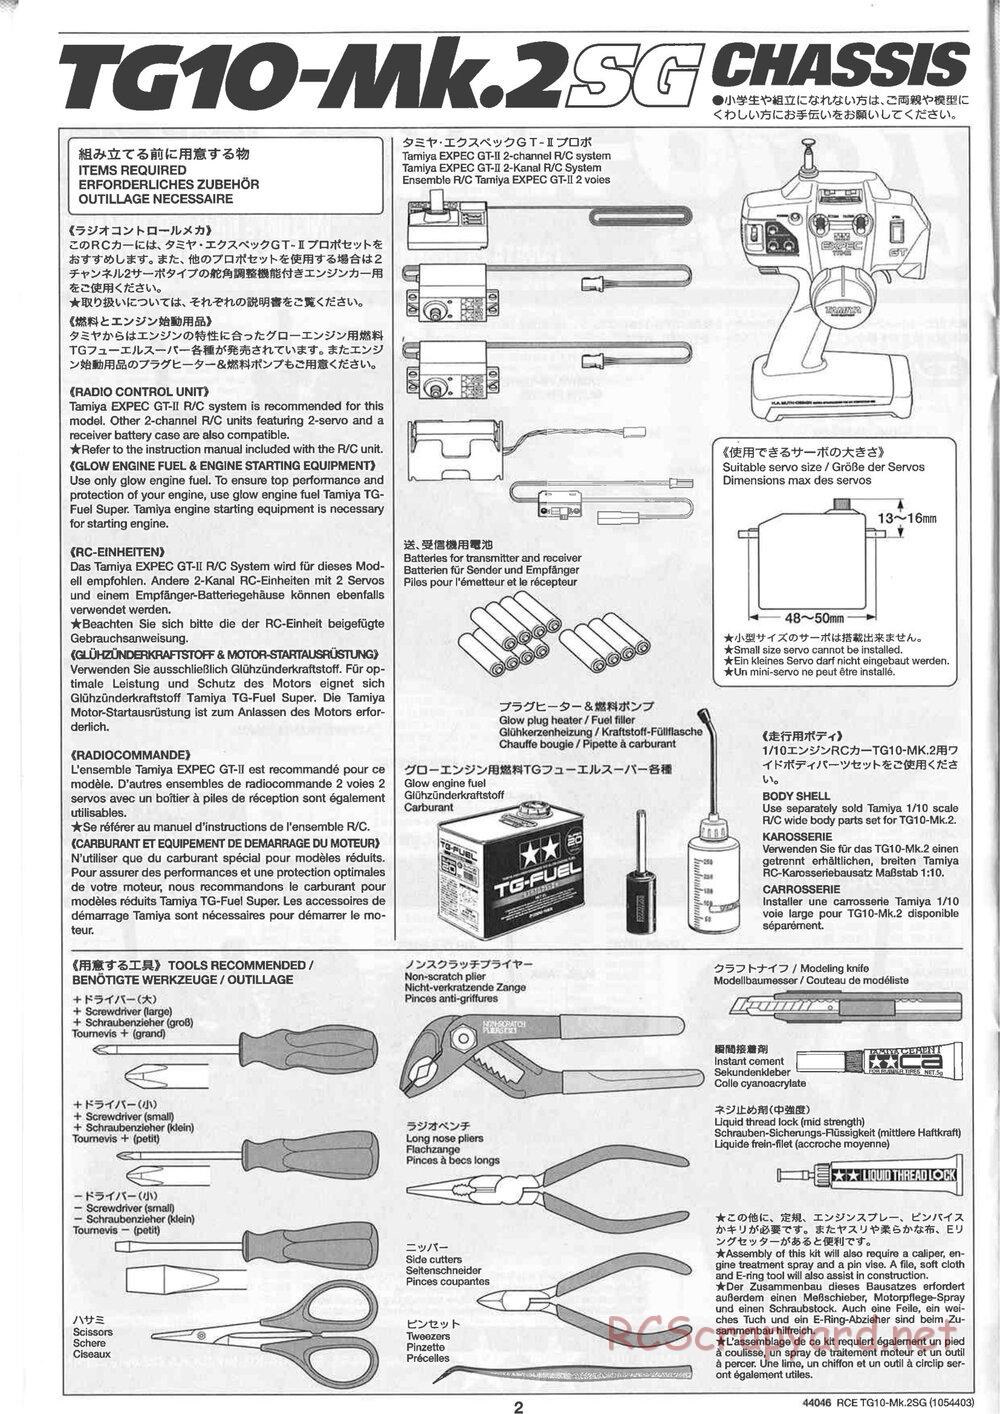 Tamiya - TG10 Mk.2SG Chassis - Manual - Page 2